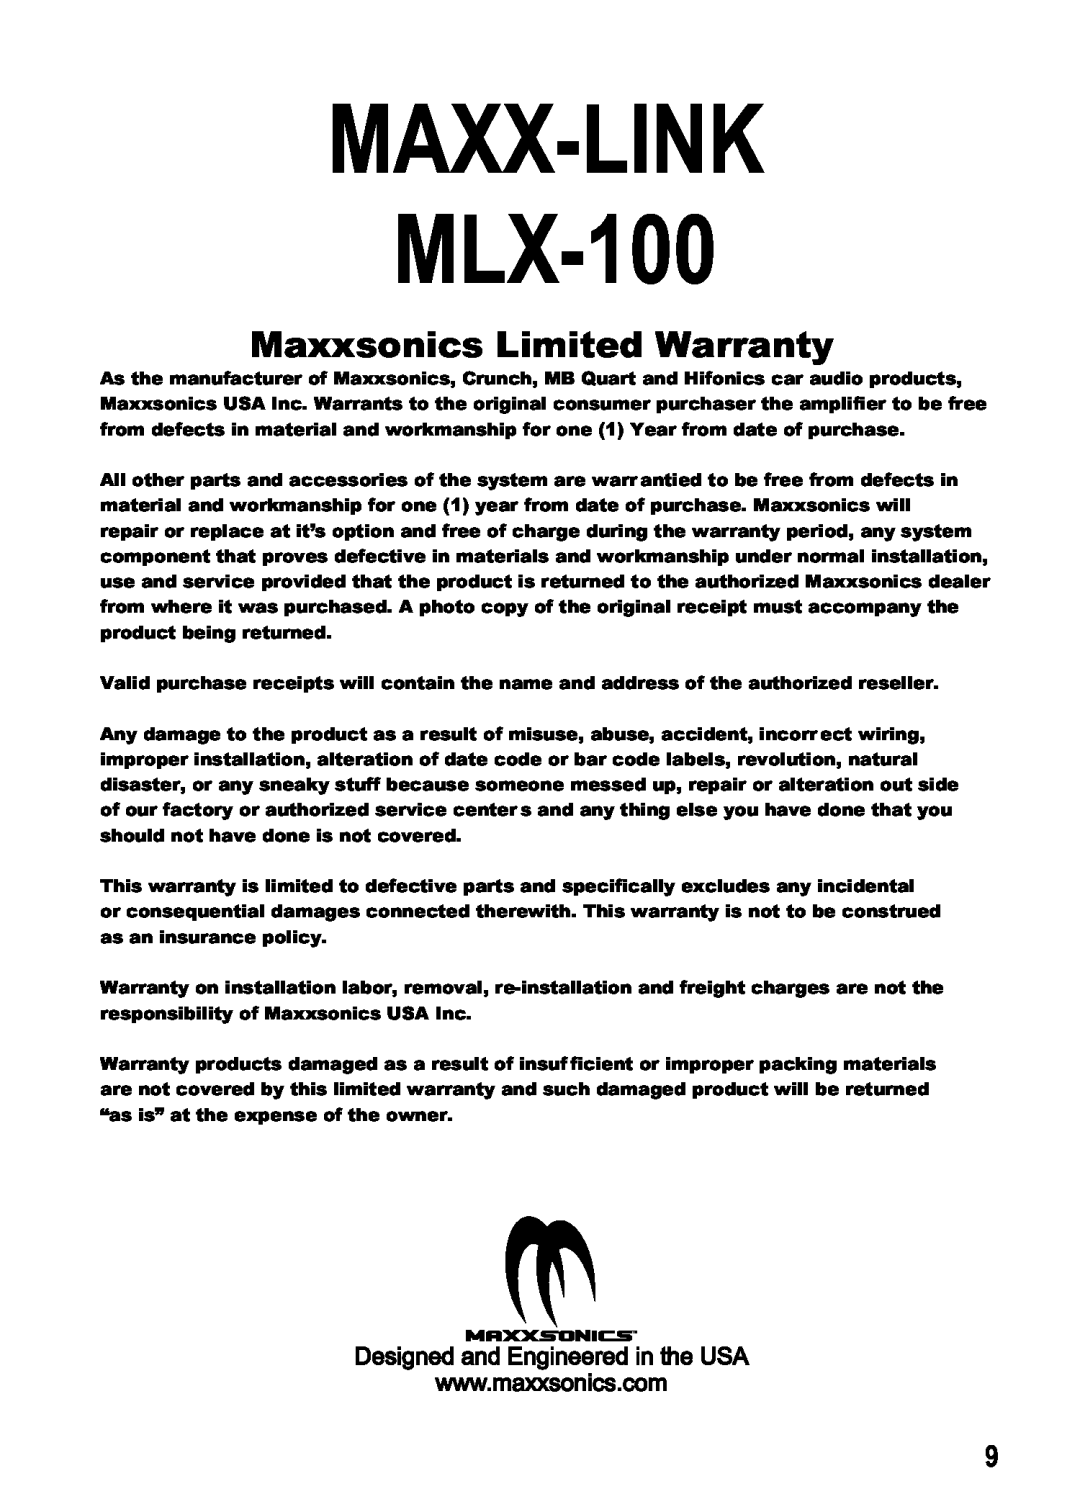 Maxxsonics manual Maxxsonics Limited Warranty, MAXX-LINK MLX-100 